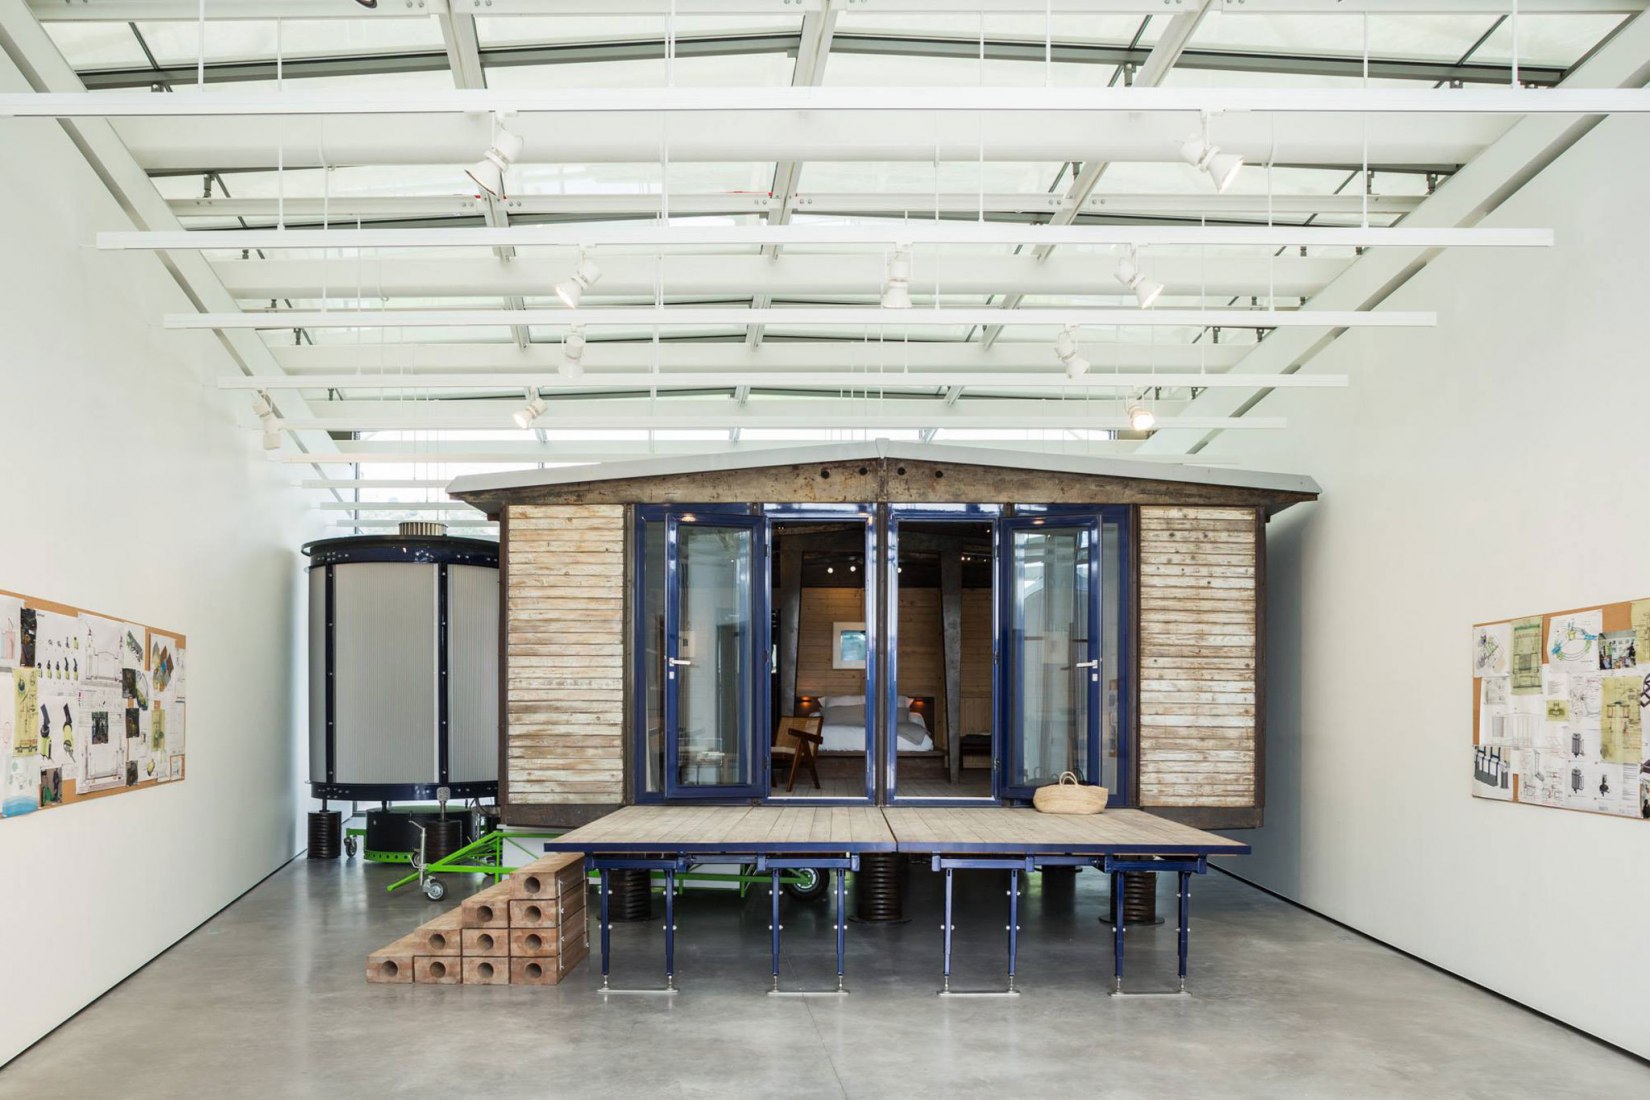 Casa empaquetad de 6x6 metros de Jean Prouvé, rediseñada por Rogers Stirk Harbour + Partners, en la galería de arte diseñada por Renzo Piano